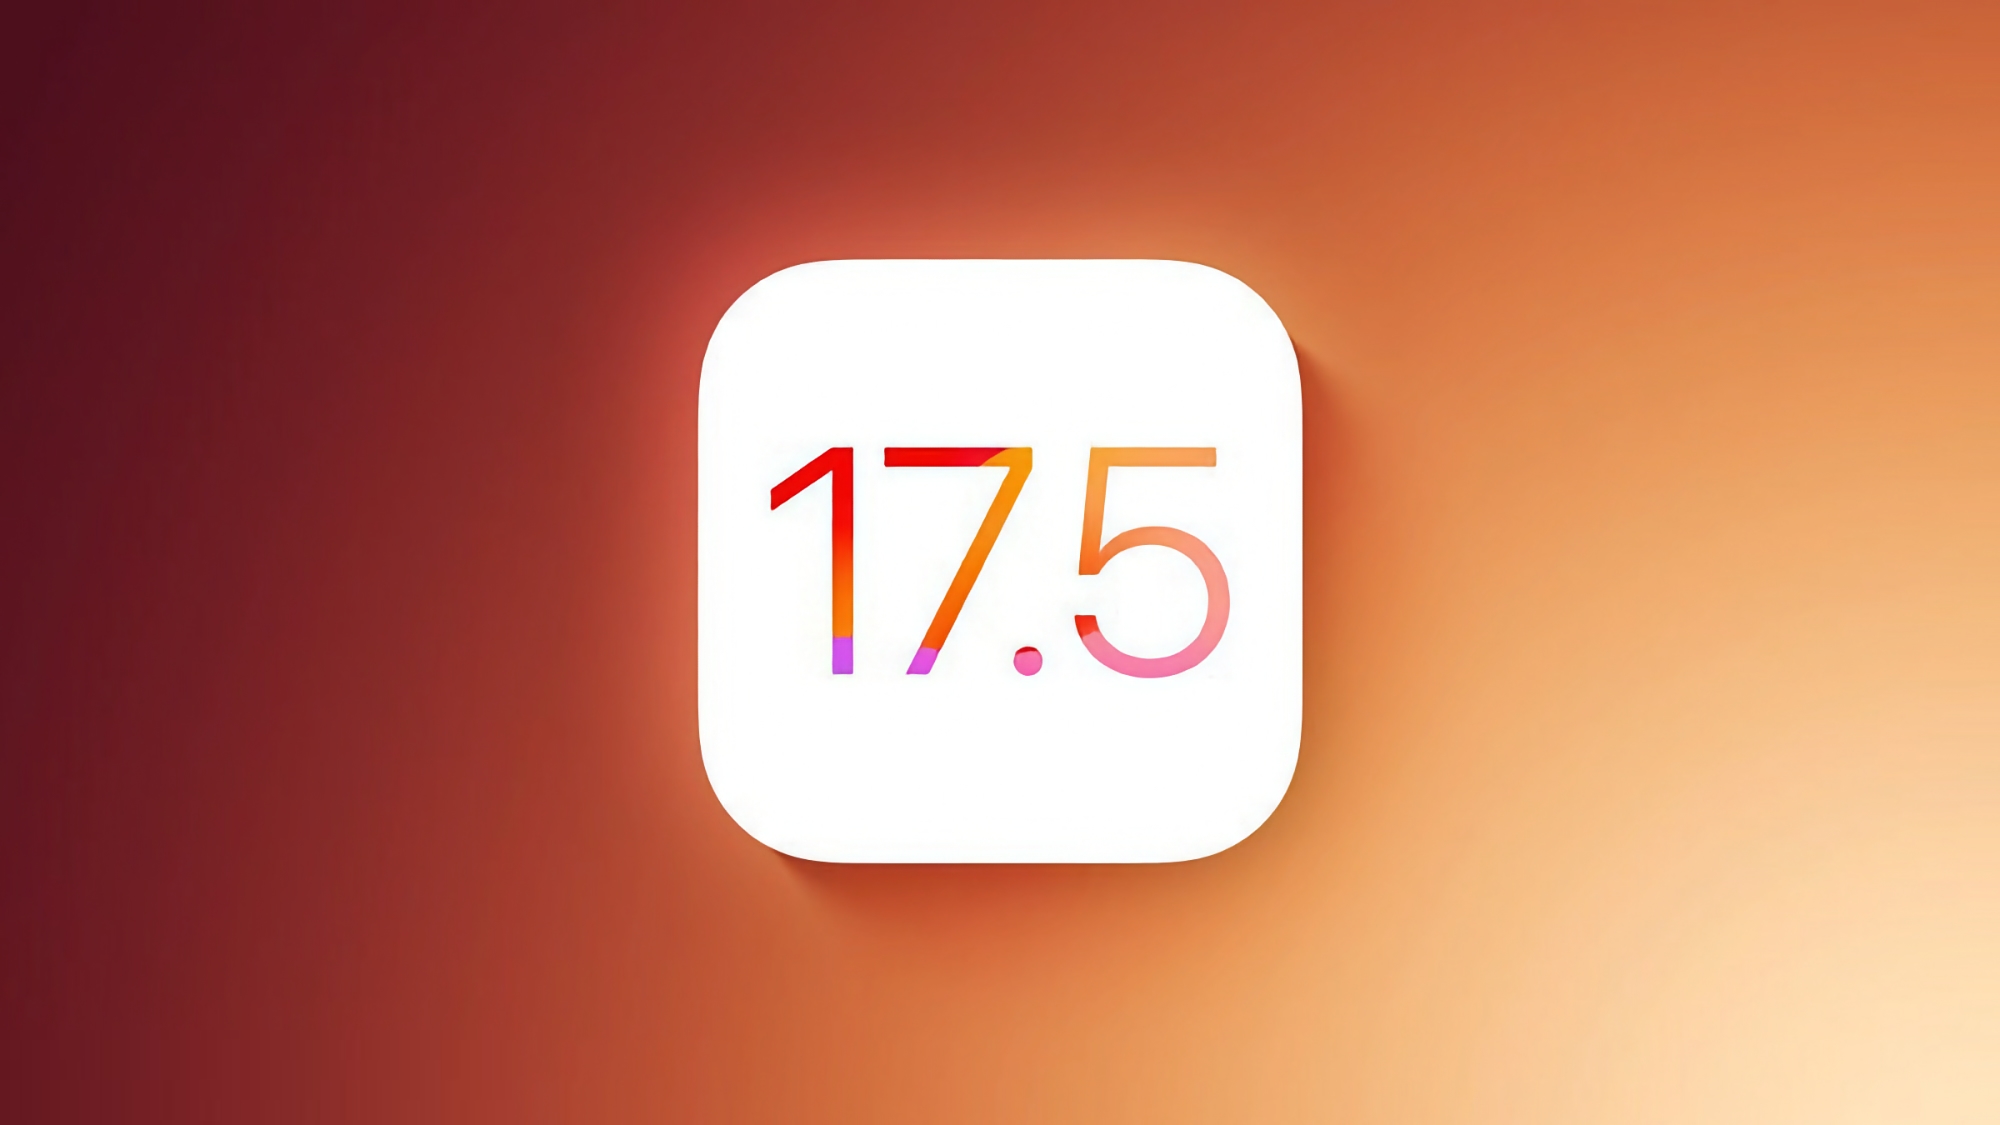 Apple ha lanzado una nueva versión beta de iOS 17.5 y iPadOS 17.5 para desarrolladores